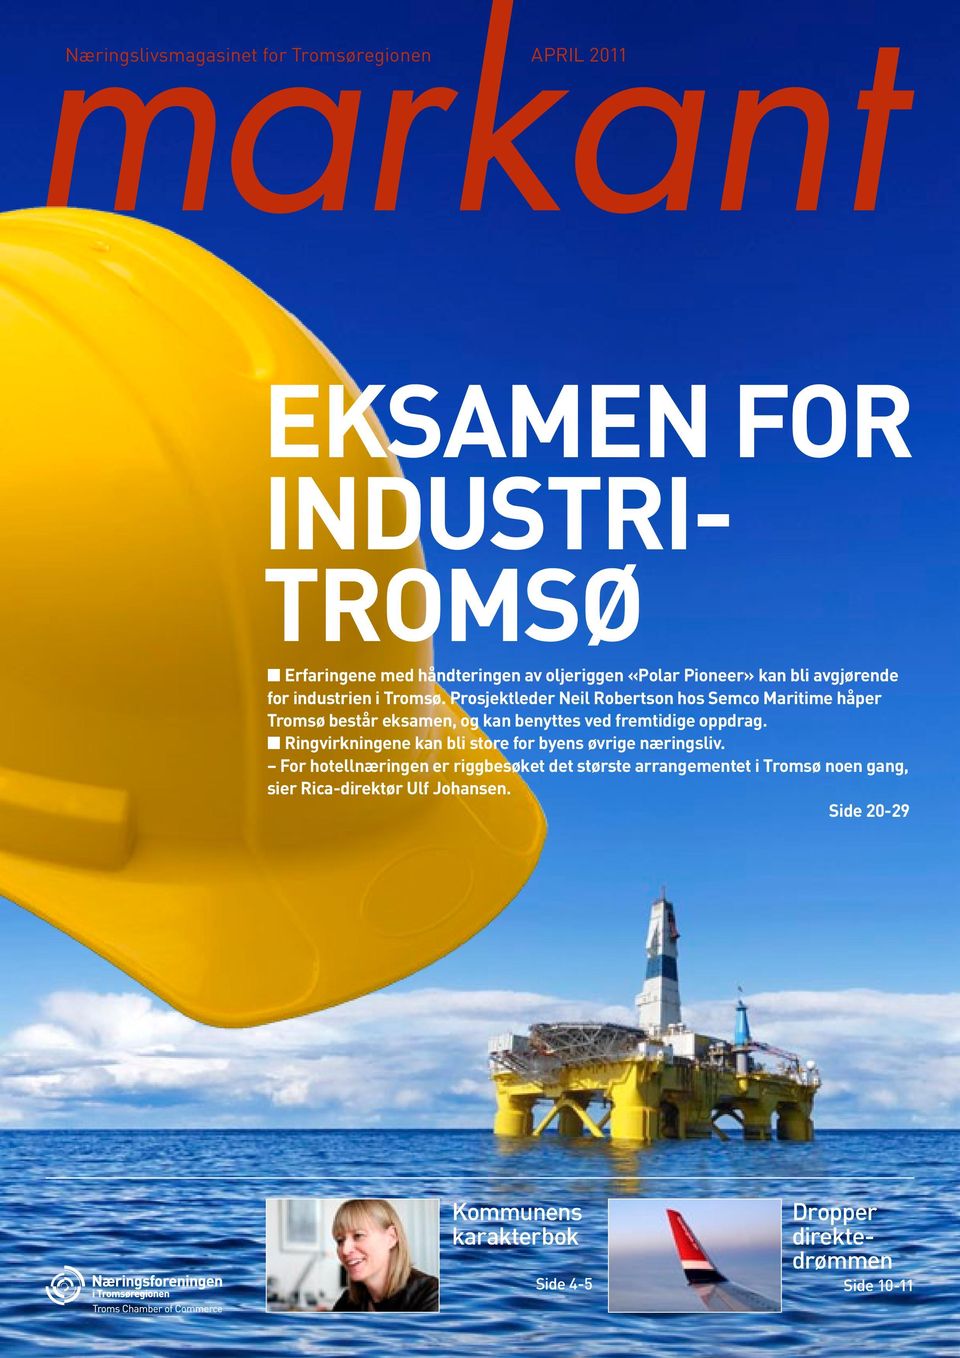 Prosjektleder Neil Robertson hos Semco Maritime håper Tromsø består eksamen, og kan benyttes ved fremtidige oppdrag.